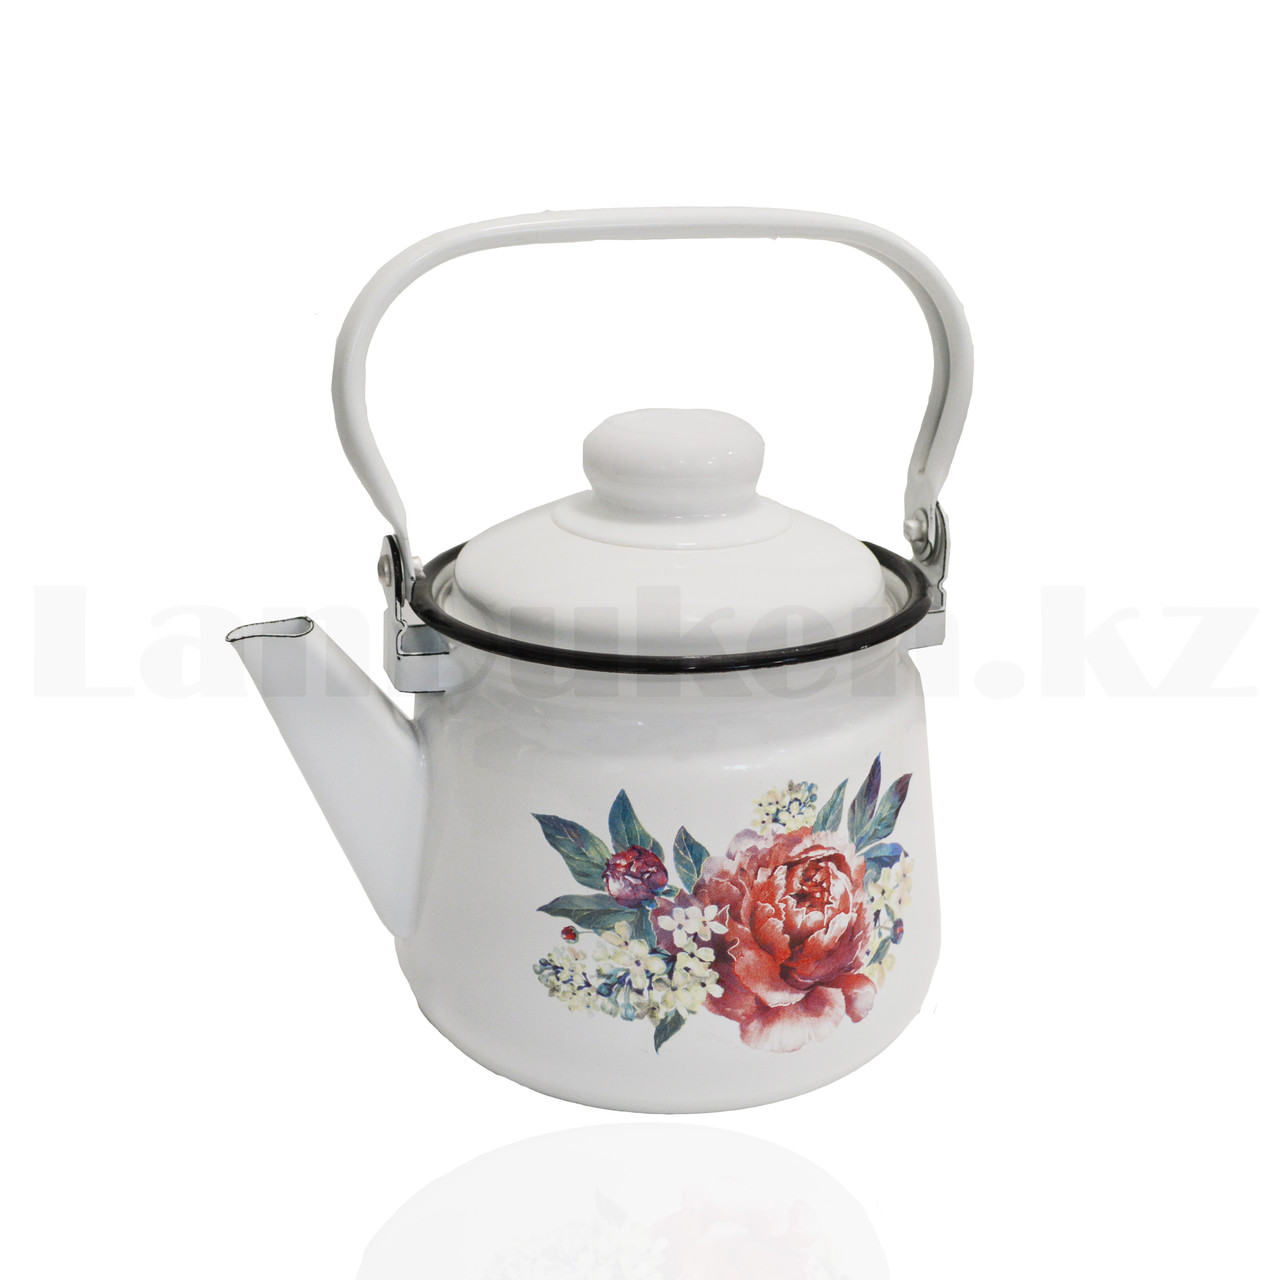 Чайник для кипячения воды эмалированный 1,5 литра с рисунком цветов, фото 1